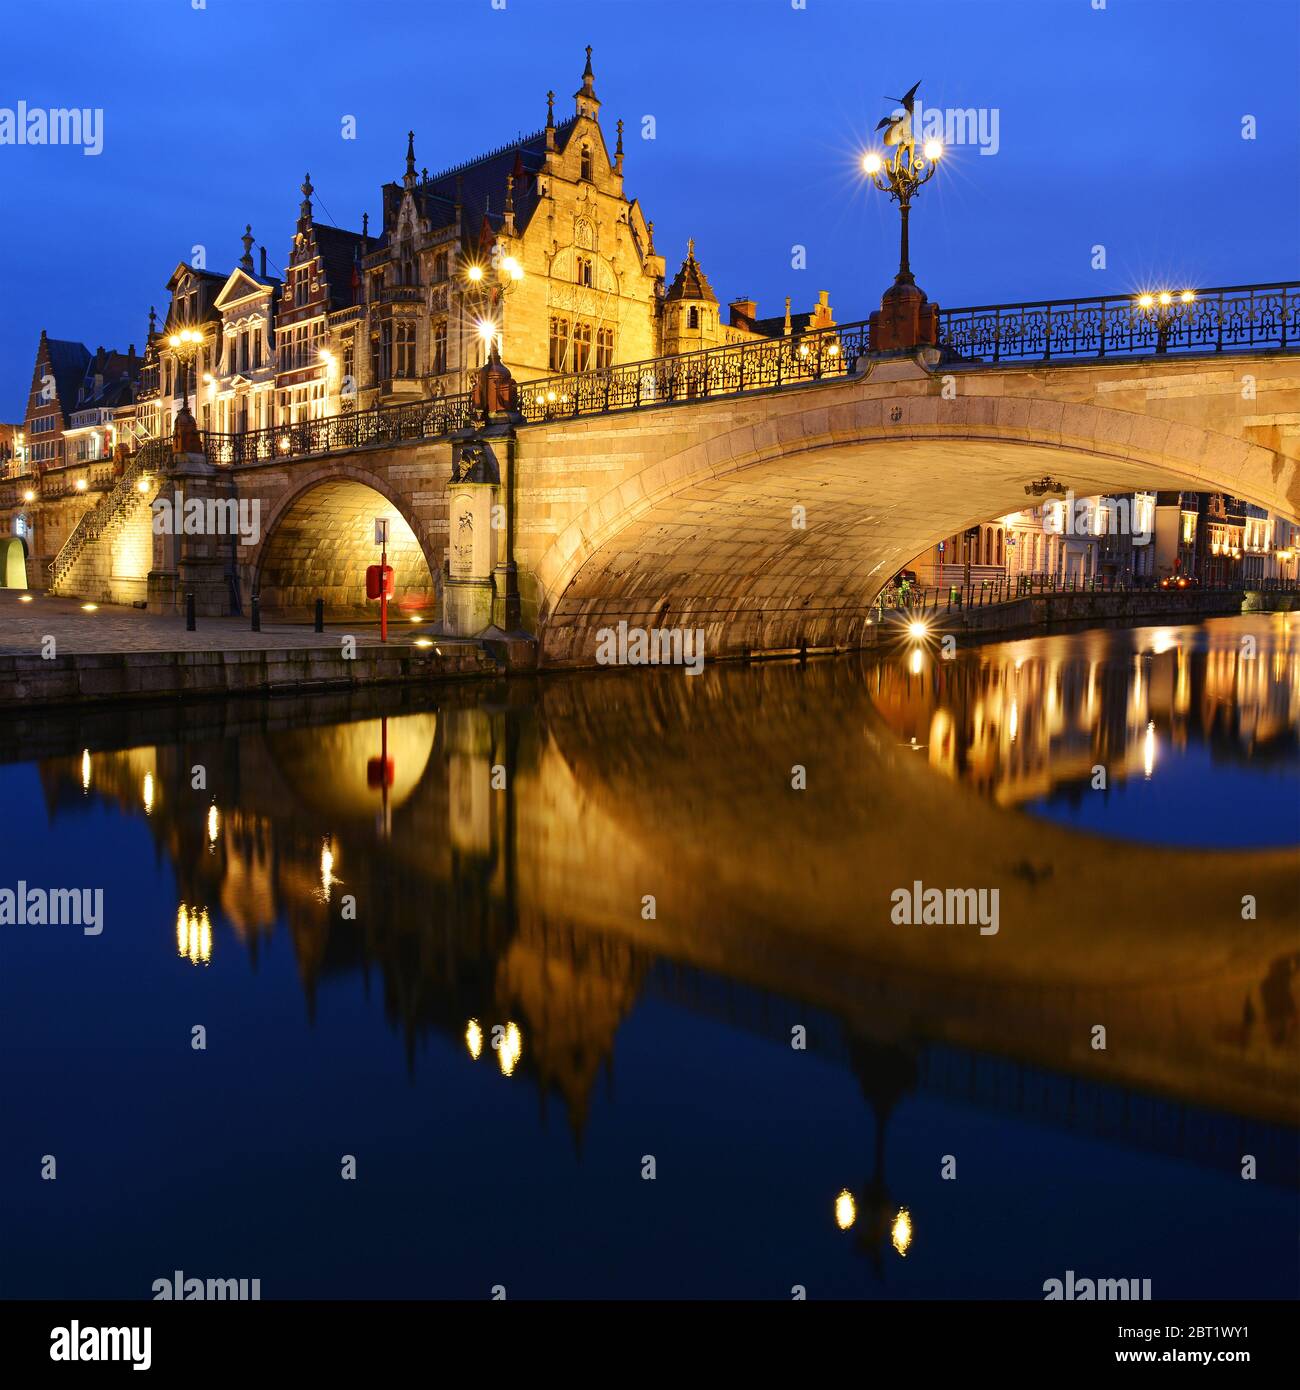 Paysage urbain de Gand la nuit, au bord de la rivière Leie, avec un pont à réflexion, Flandre orientale, Belgique. Banque D'Images